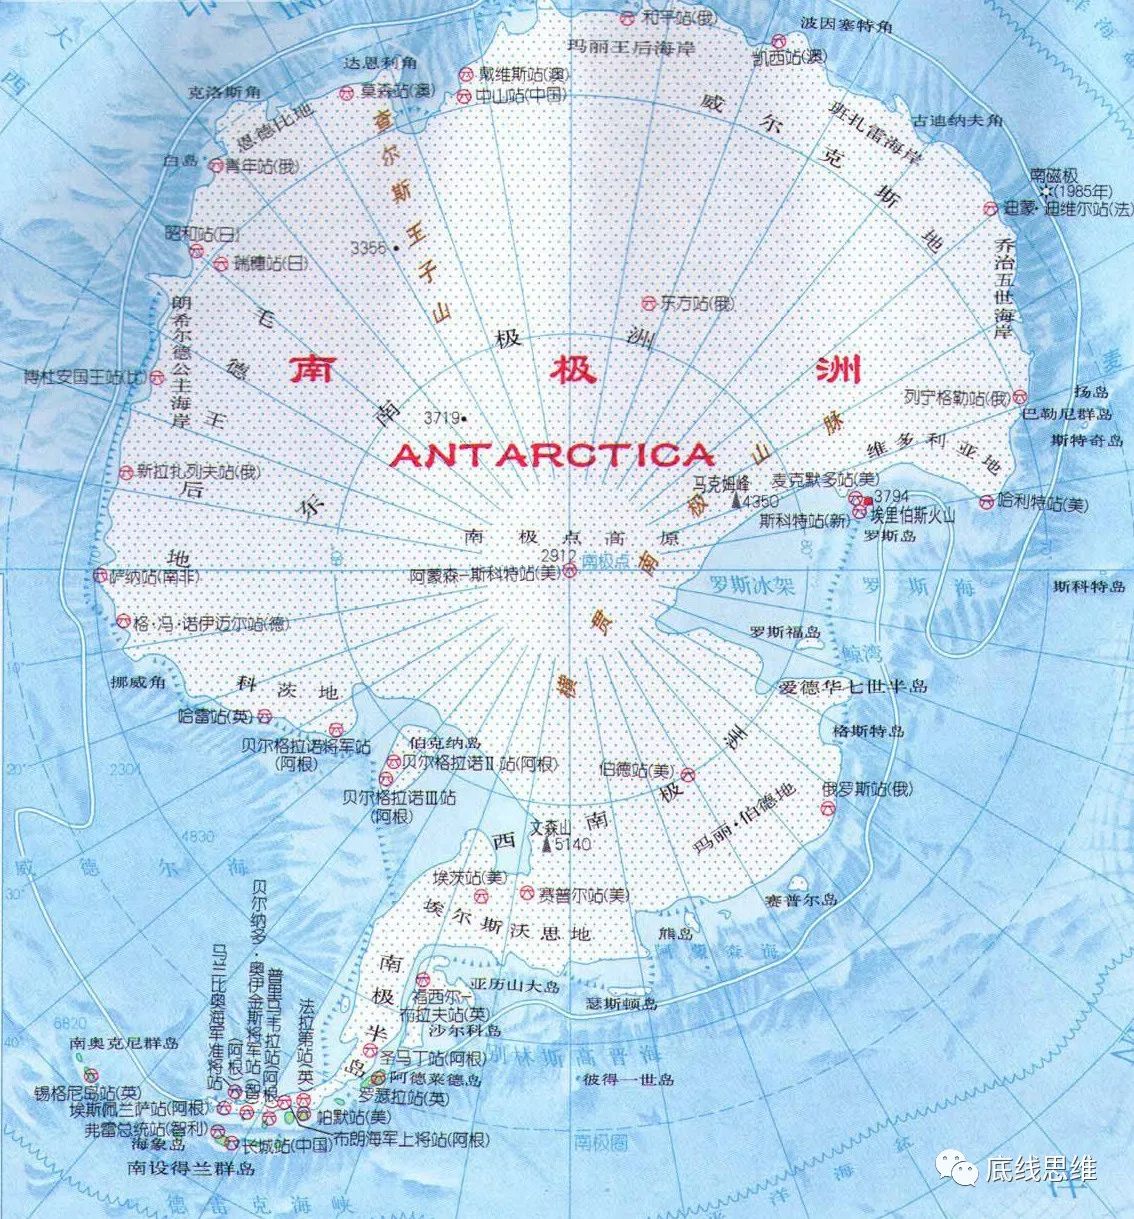 "南极"是地球上第五大洲"南极洲"的简称,面积约1400万平方公里,是